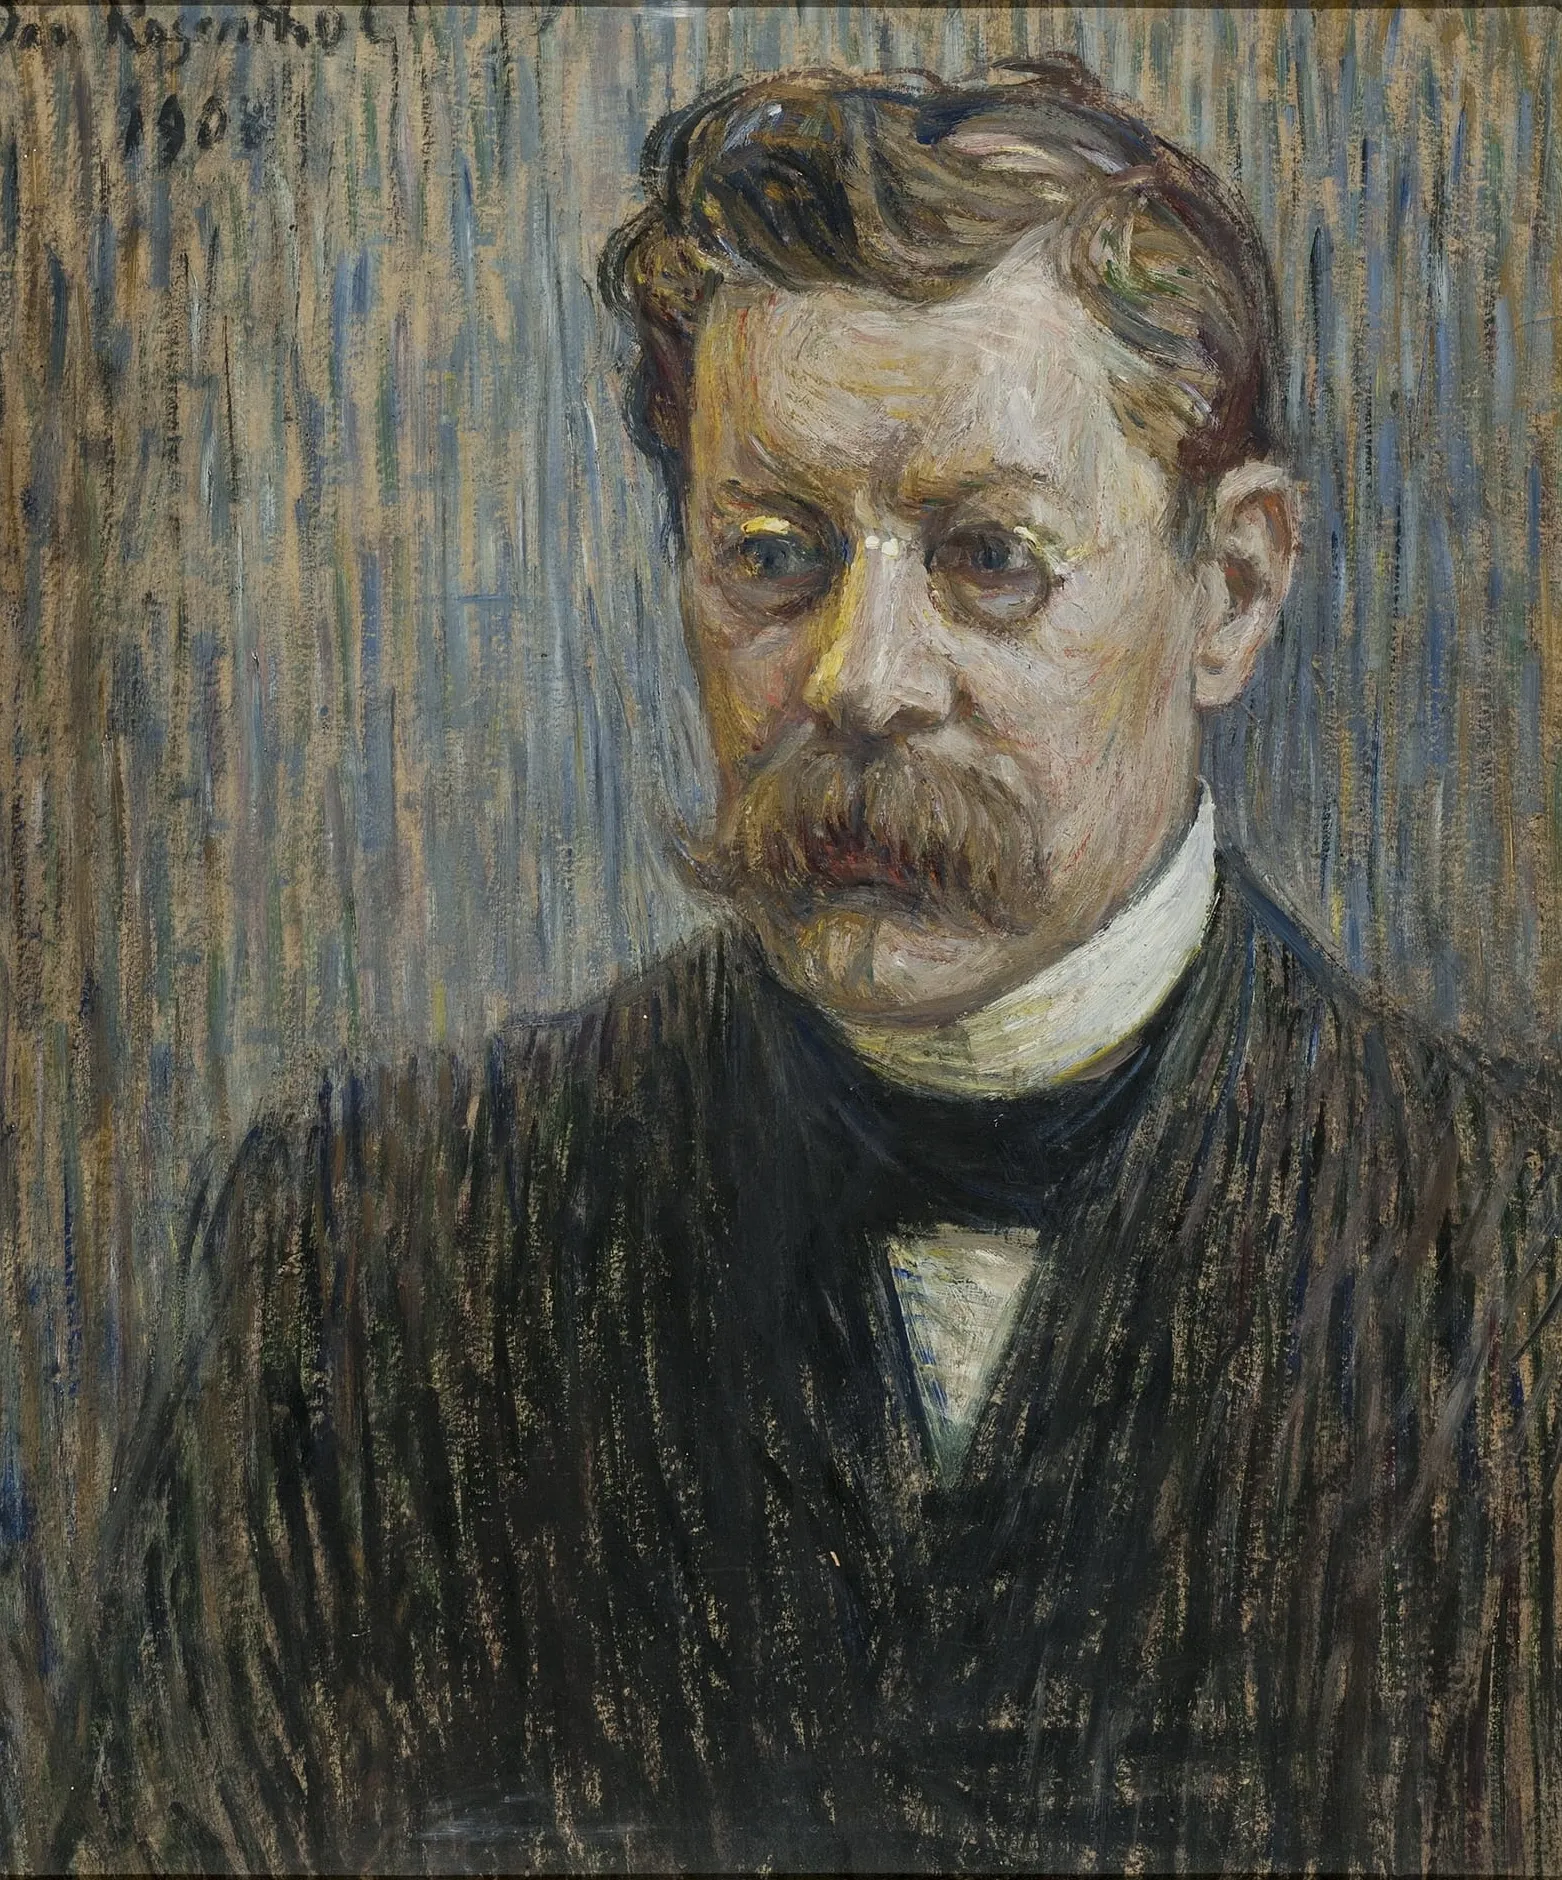 Janis-Rozentals-Portrait-of-Writer-Rudolfs-Blaumanis-1908